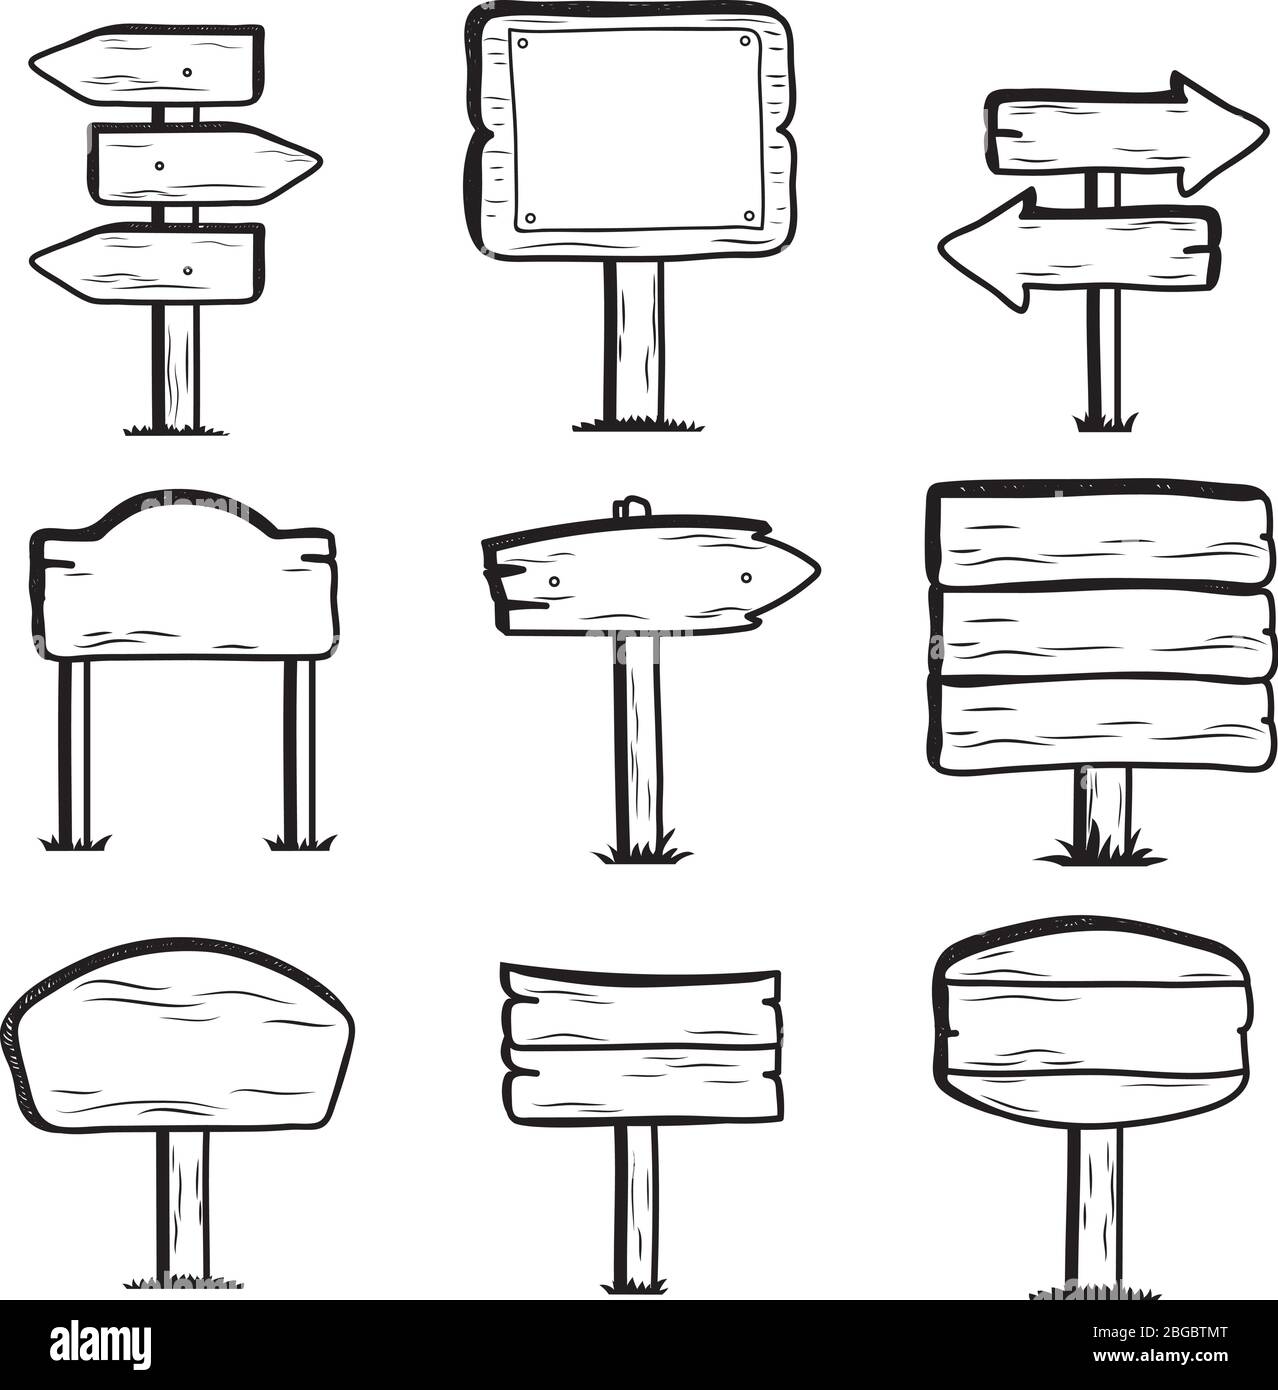 Handgezeichnete Holzschilder. Symbole für Doodle-Zeichen. Holzrahmen Pfeil, Holzplakatwand Banner, Vektor-Illustration Stock Vektor